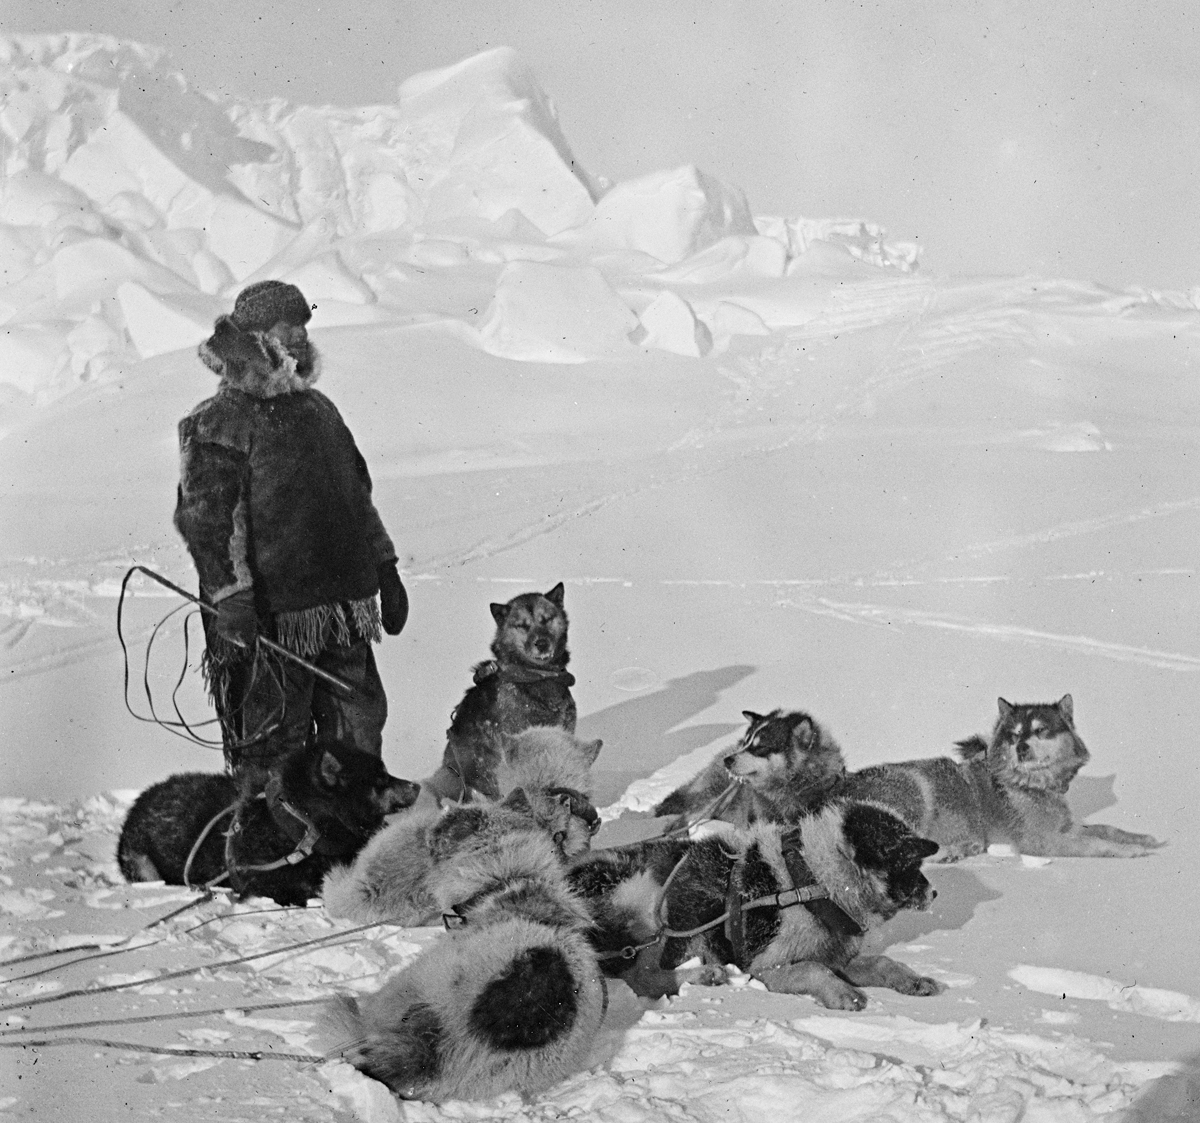 Руководитель первой экспедиции покорившей южный полюс. Руаль Амундсен Южный полюс. Экспедиция Руаля Амундсена.